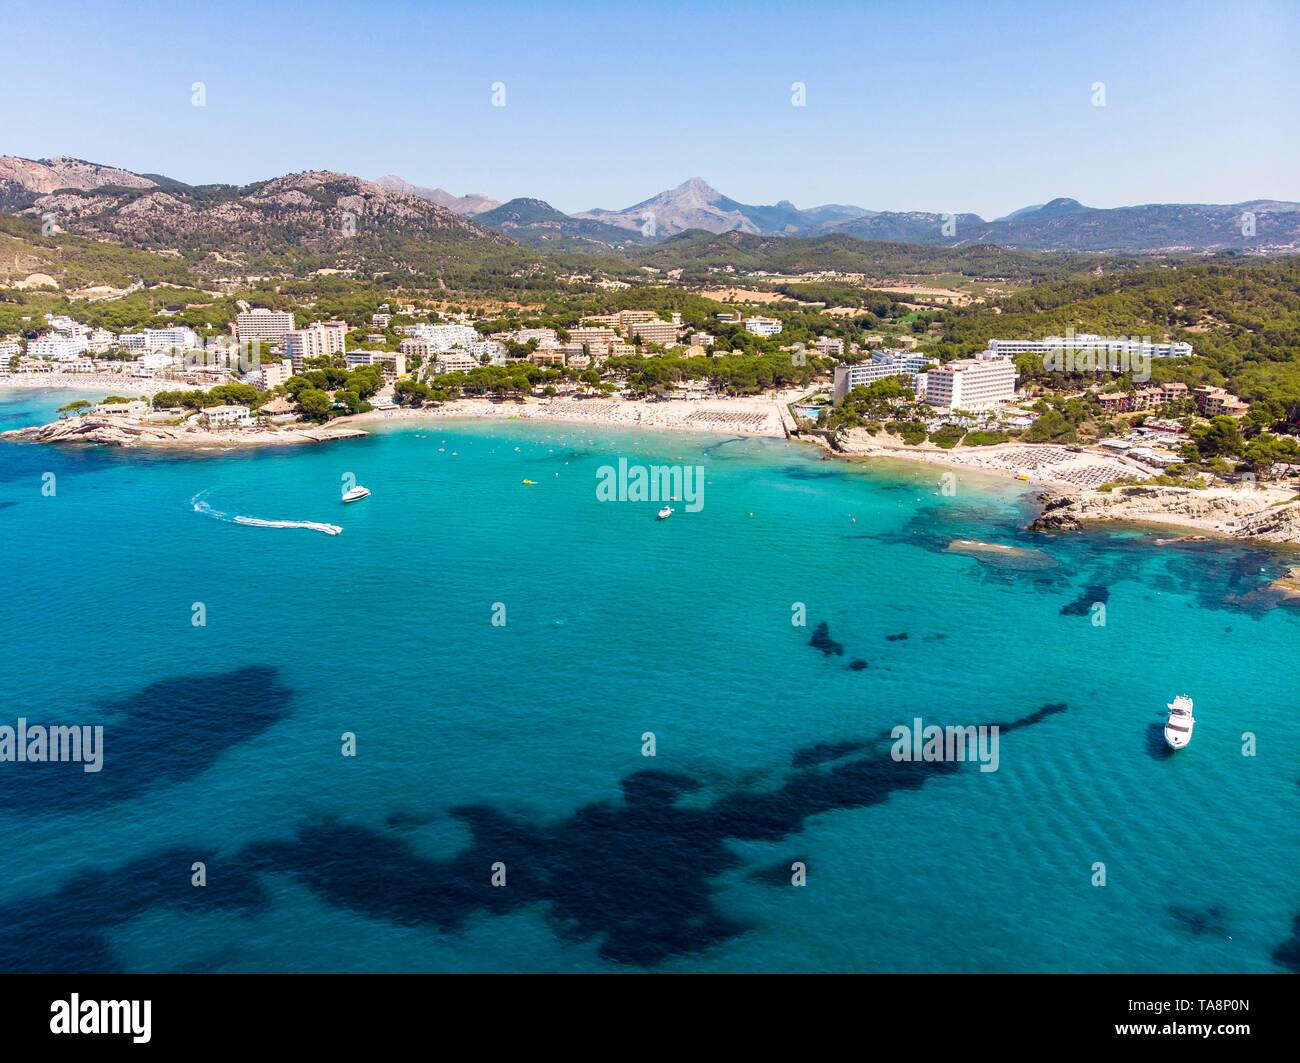 Vista aerea, con vista della città turistica Peguera con alberghi e spiagge, Costa de la Calma, regione Caliva, Maiorca, isole Baleari, Spagna Foto Stock